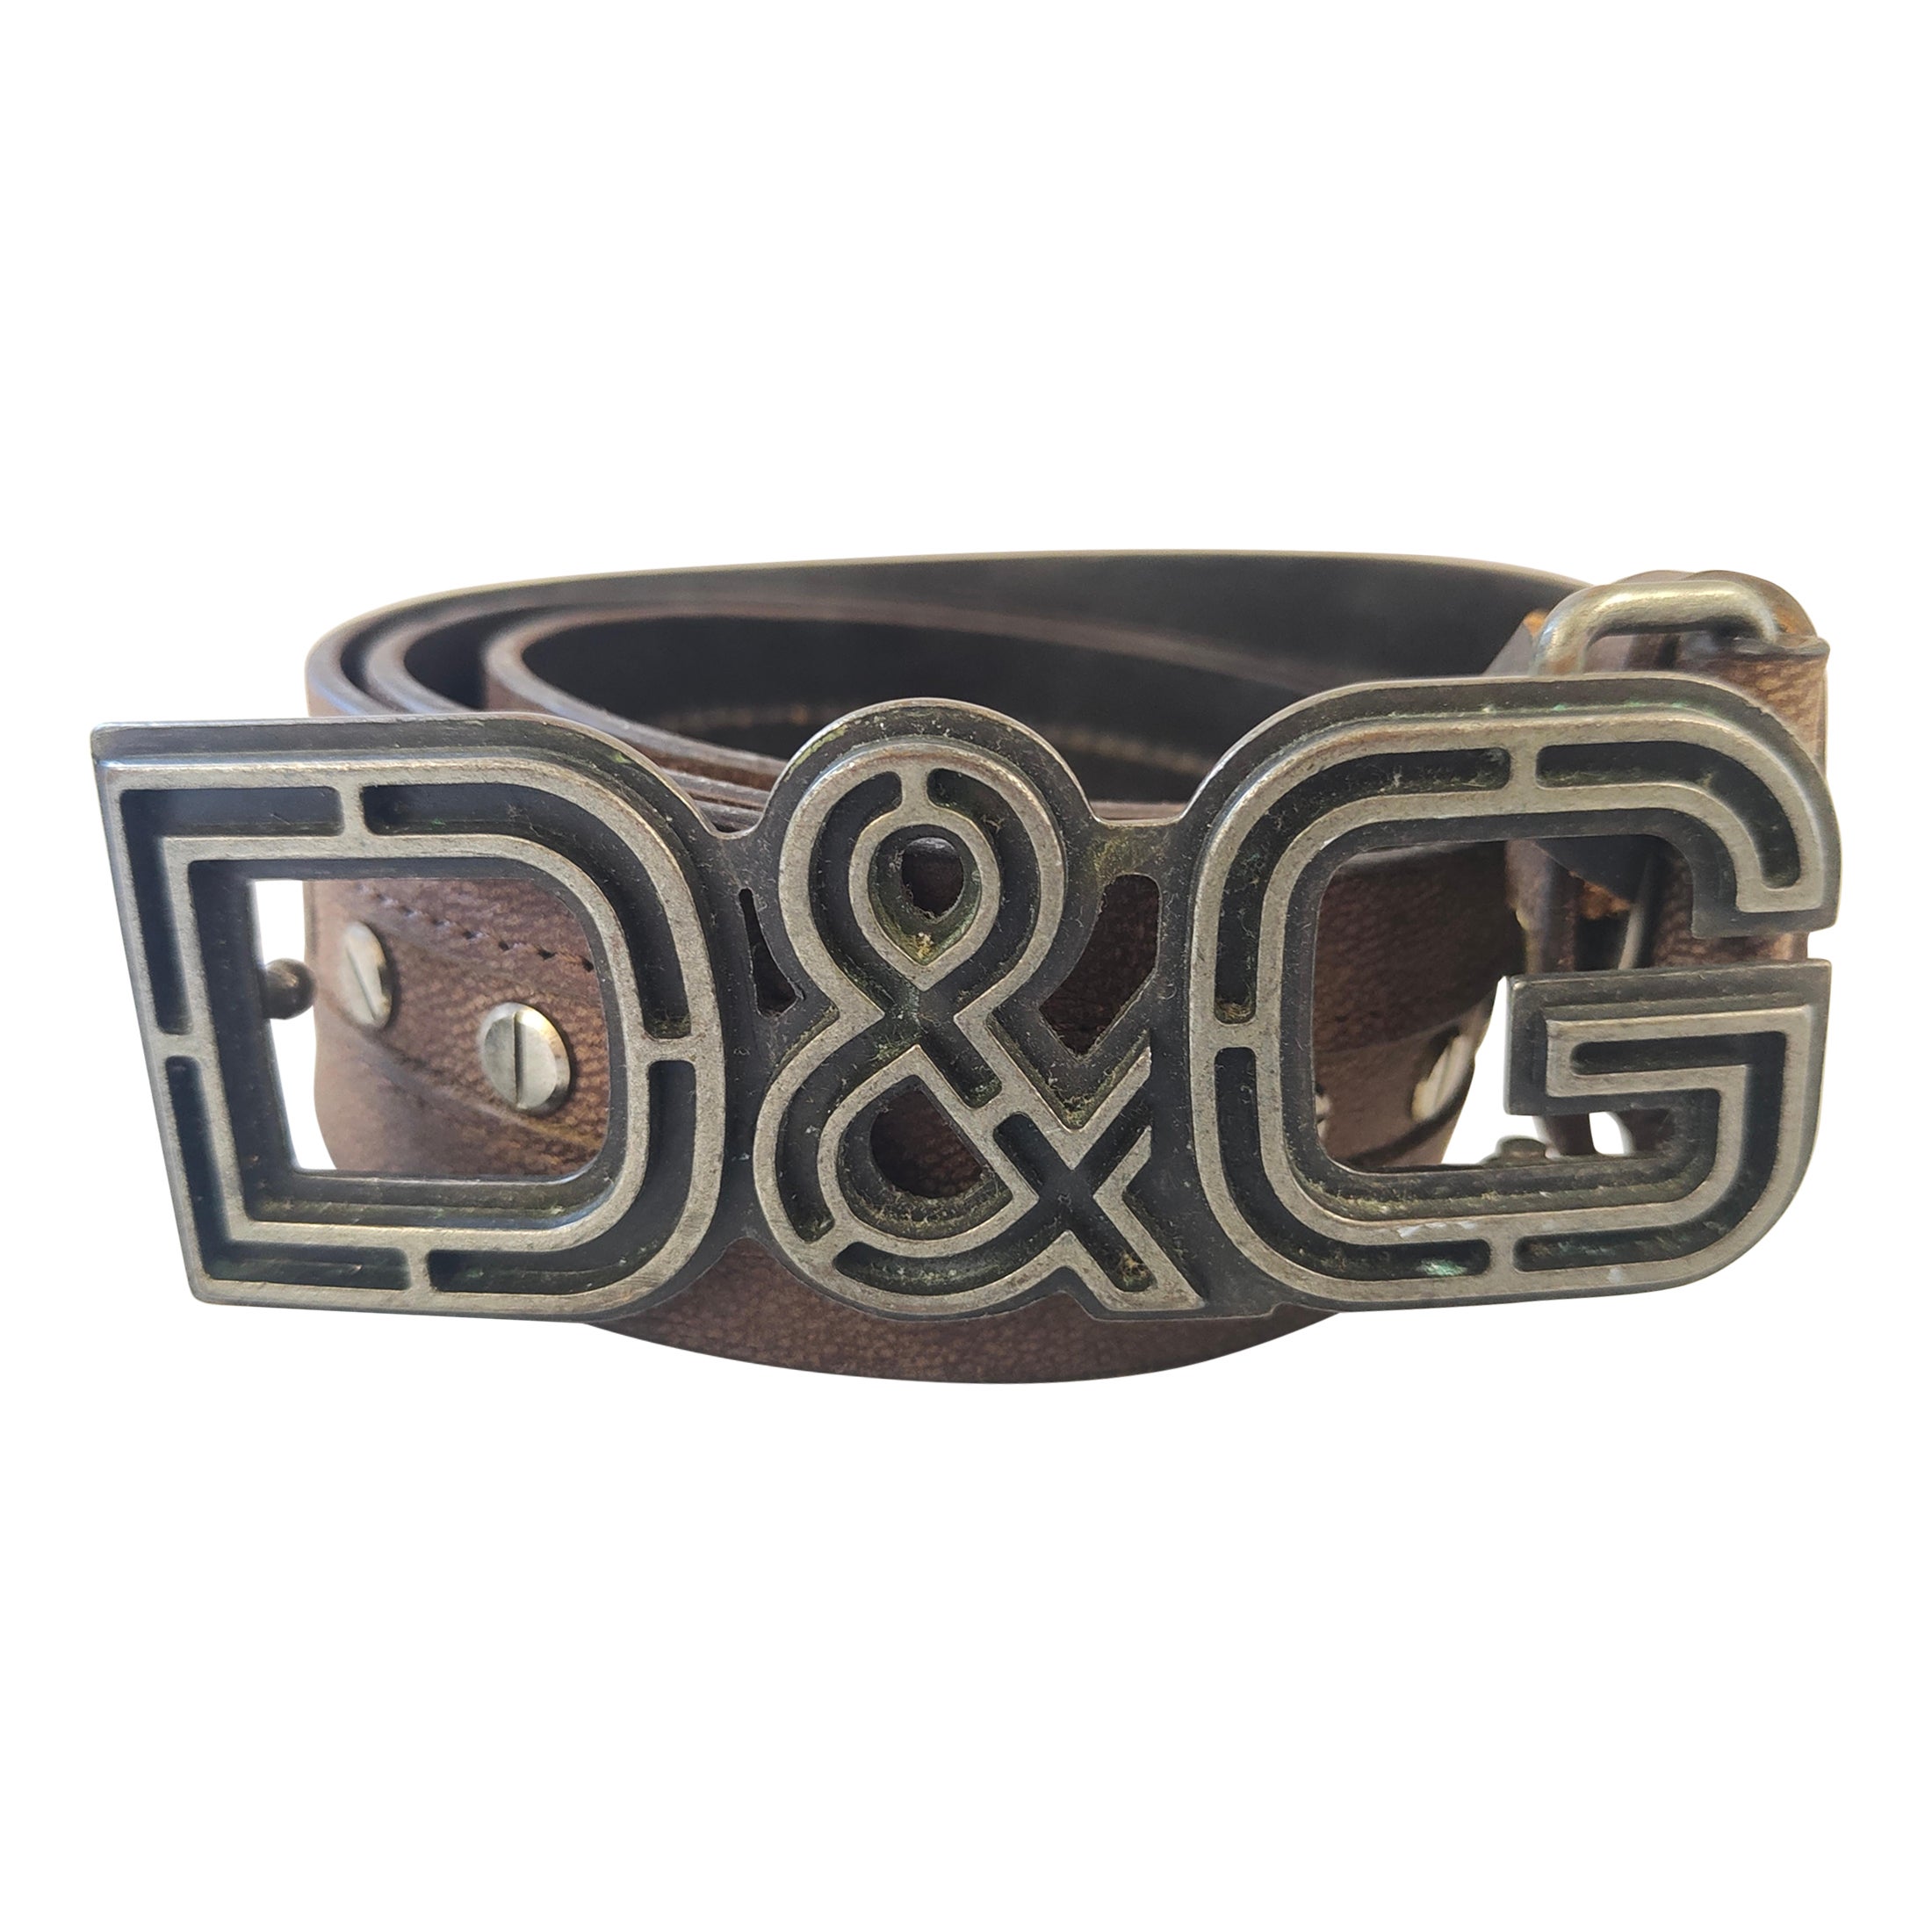 Dolce & Gabbana D&G Brown belt with studs